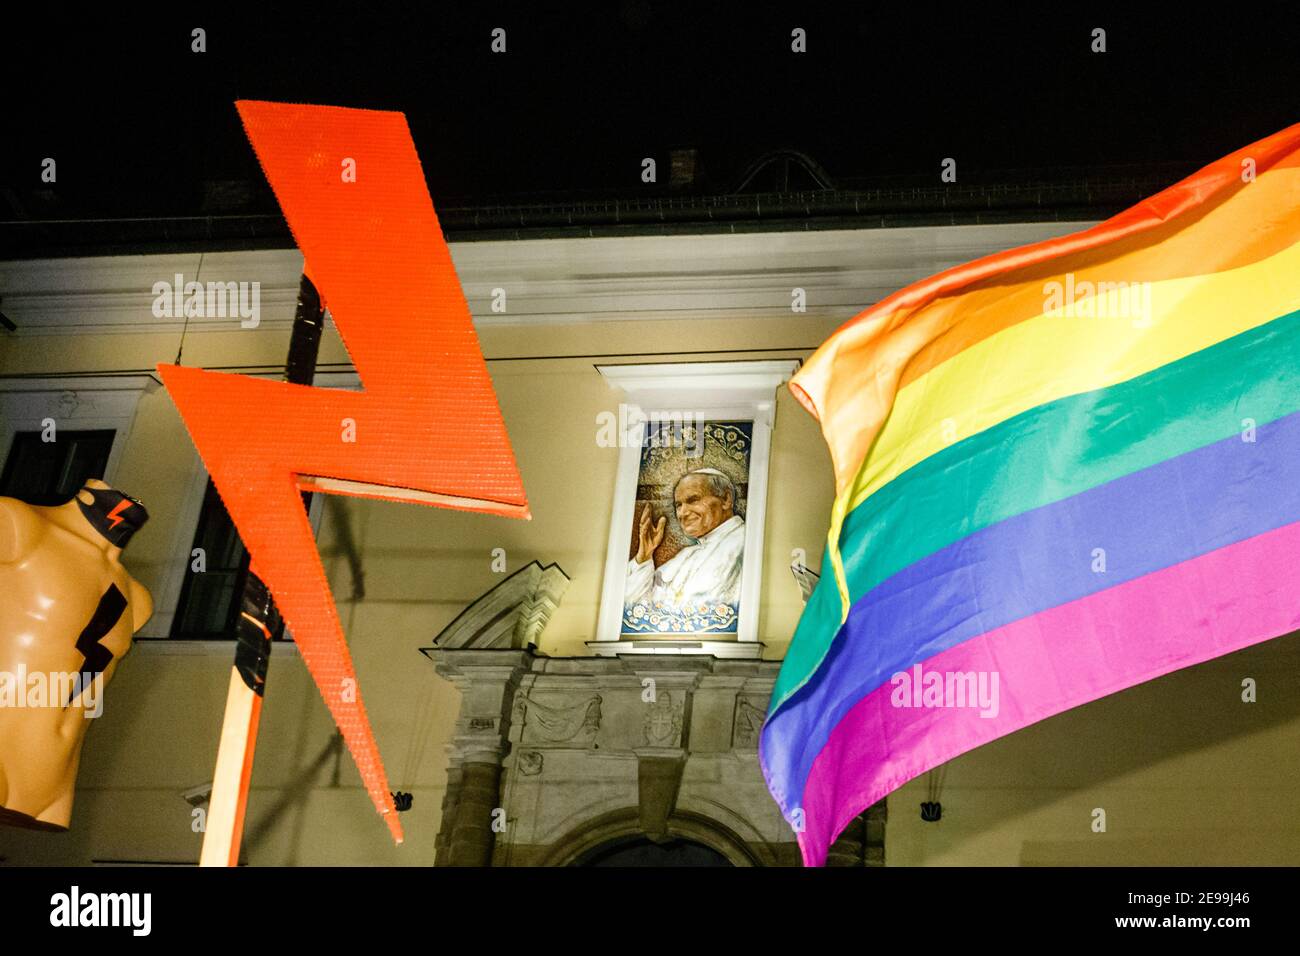 Symbole des Frauenstreiks und eine regenbogenfarbene LGBT-Pride-Flagge im katholischen Gebäude der Metropolischen Kurie während der Demonstrationen.nach dem Urteil des polnischen Verfassungsgerichts, das am 27th. Januar in Kraft trat, um eines der restriktivsten Anti-Abtreibungsgesetze in Europa umzusetzen, Hunderte von Polen gingen in allen größeren Städten auf die Straße. Die Proteste wurden vom Frauenstreik organisiert. Stockfoto